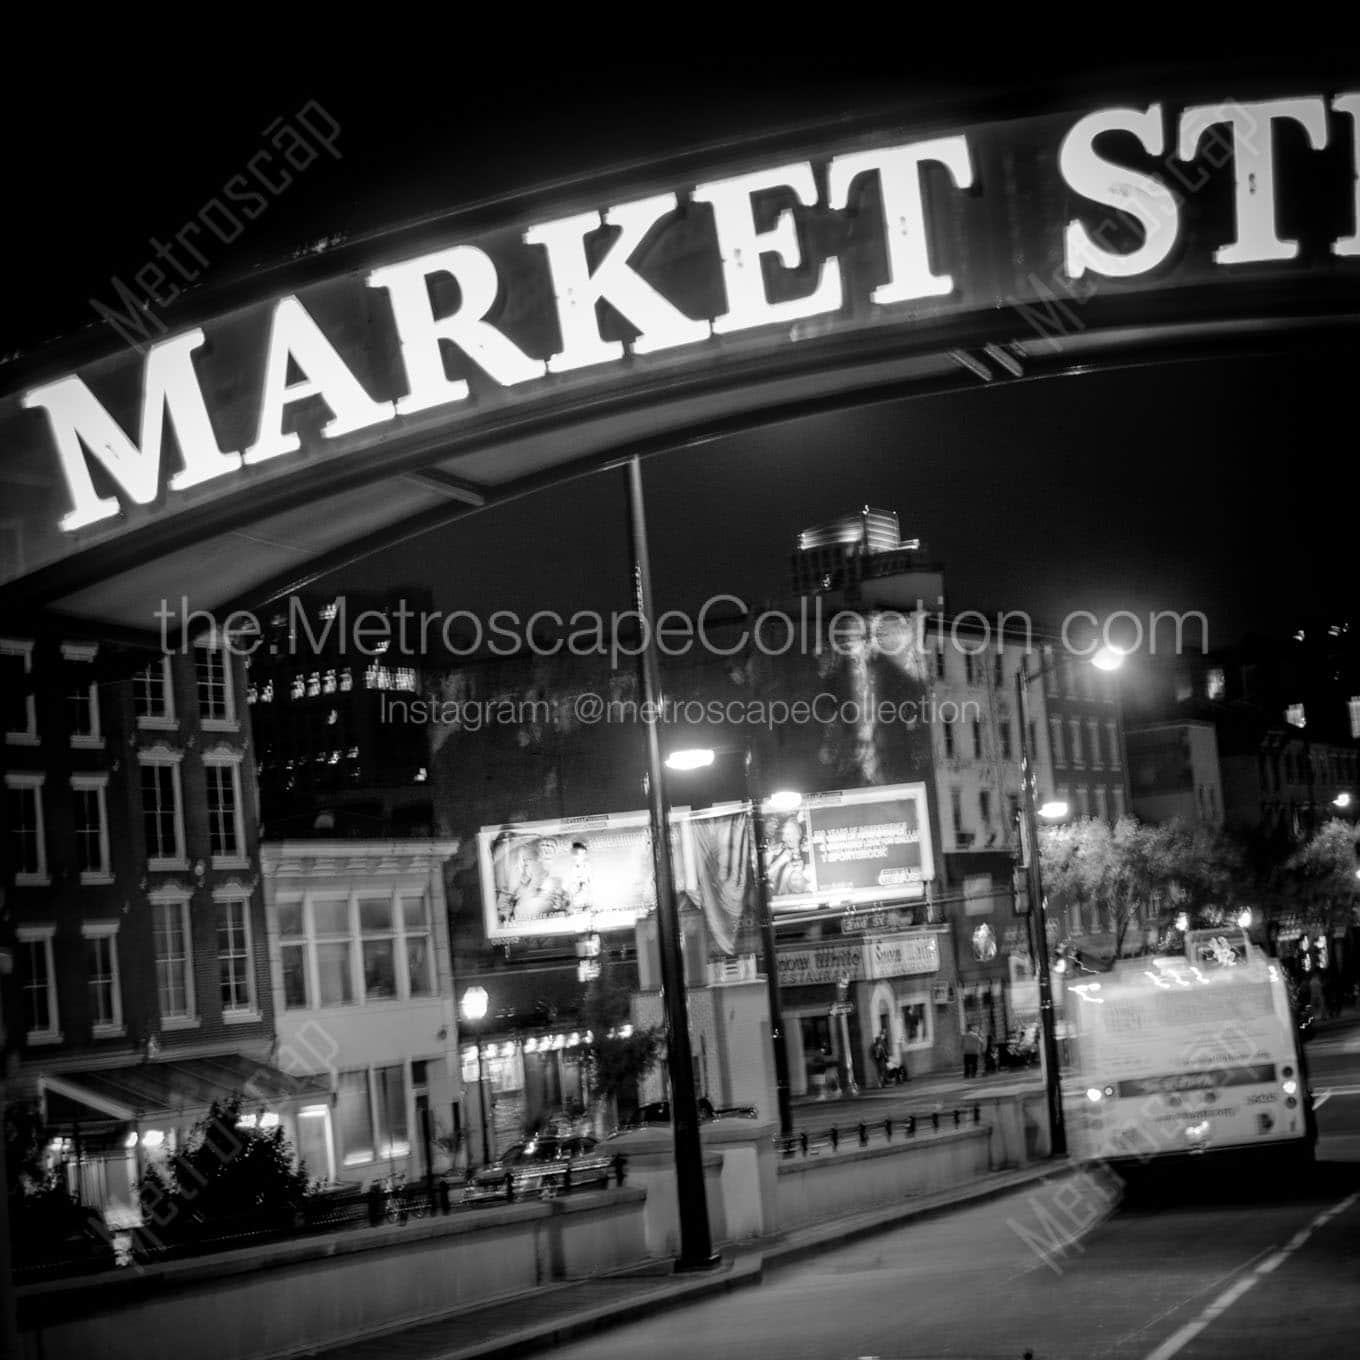 market street sign Black & White Office Art